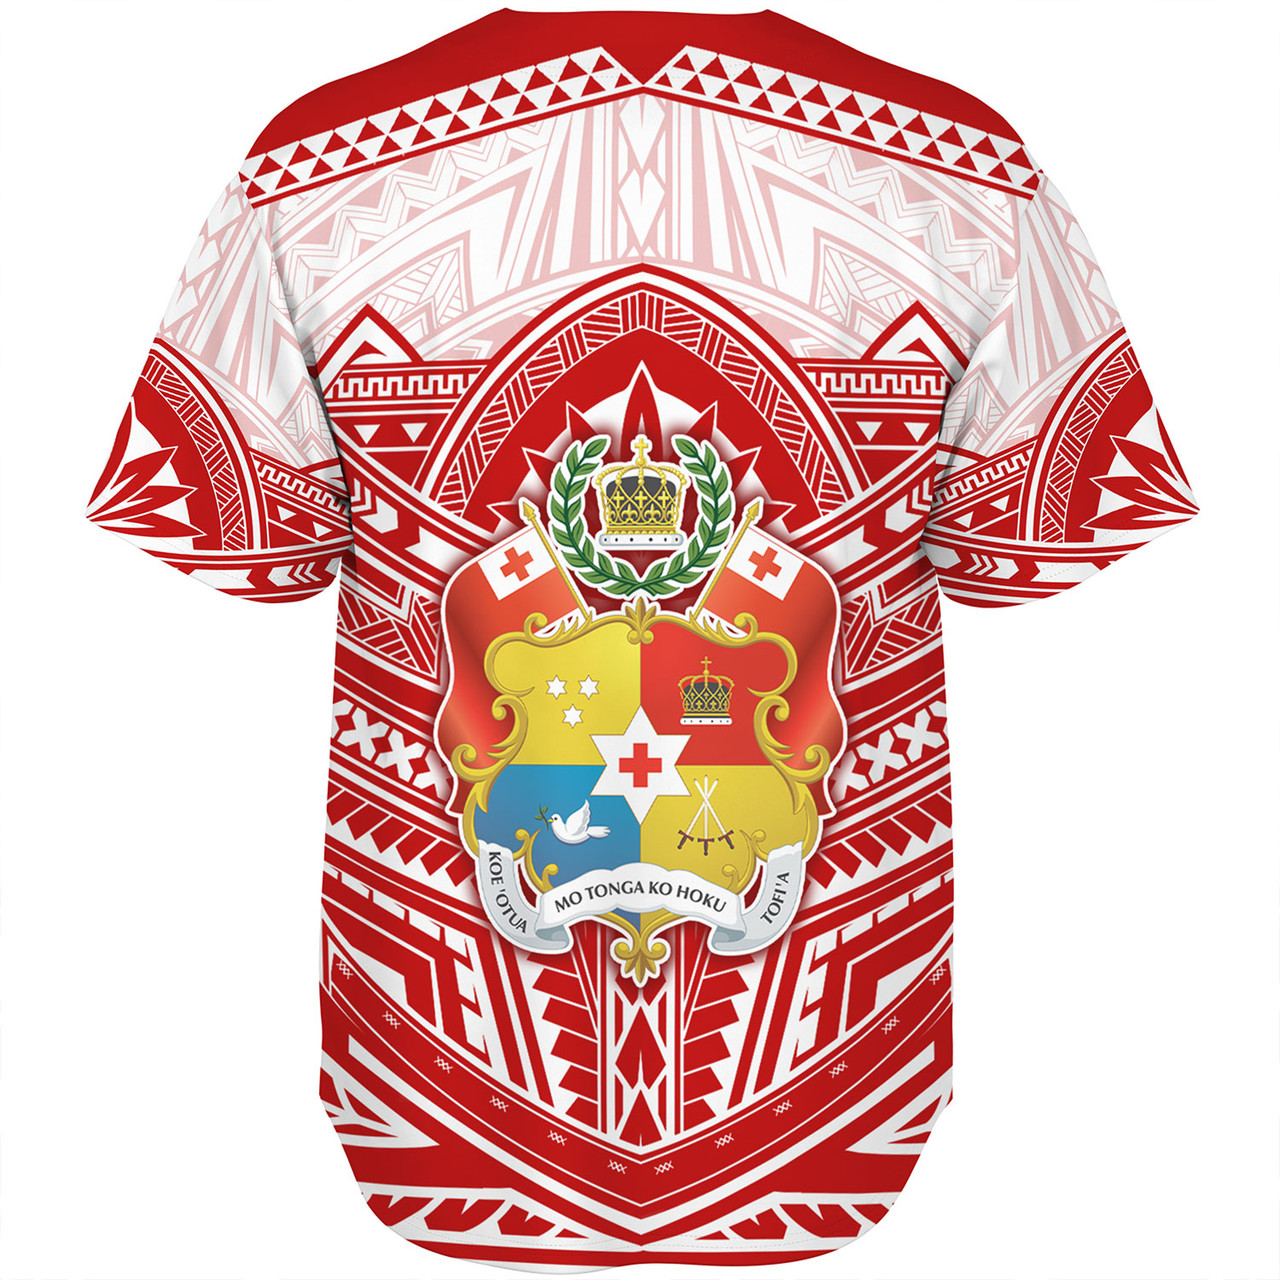 Tonga Baseball Shirt Seal Tribal Flag Color Design